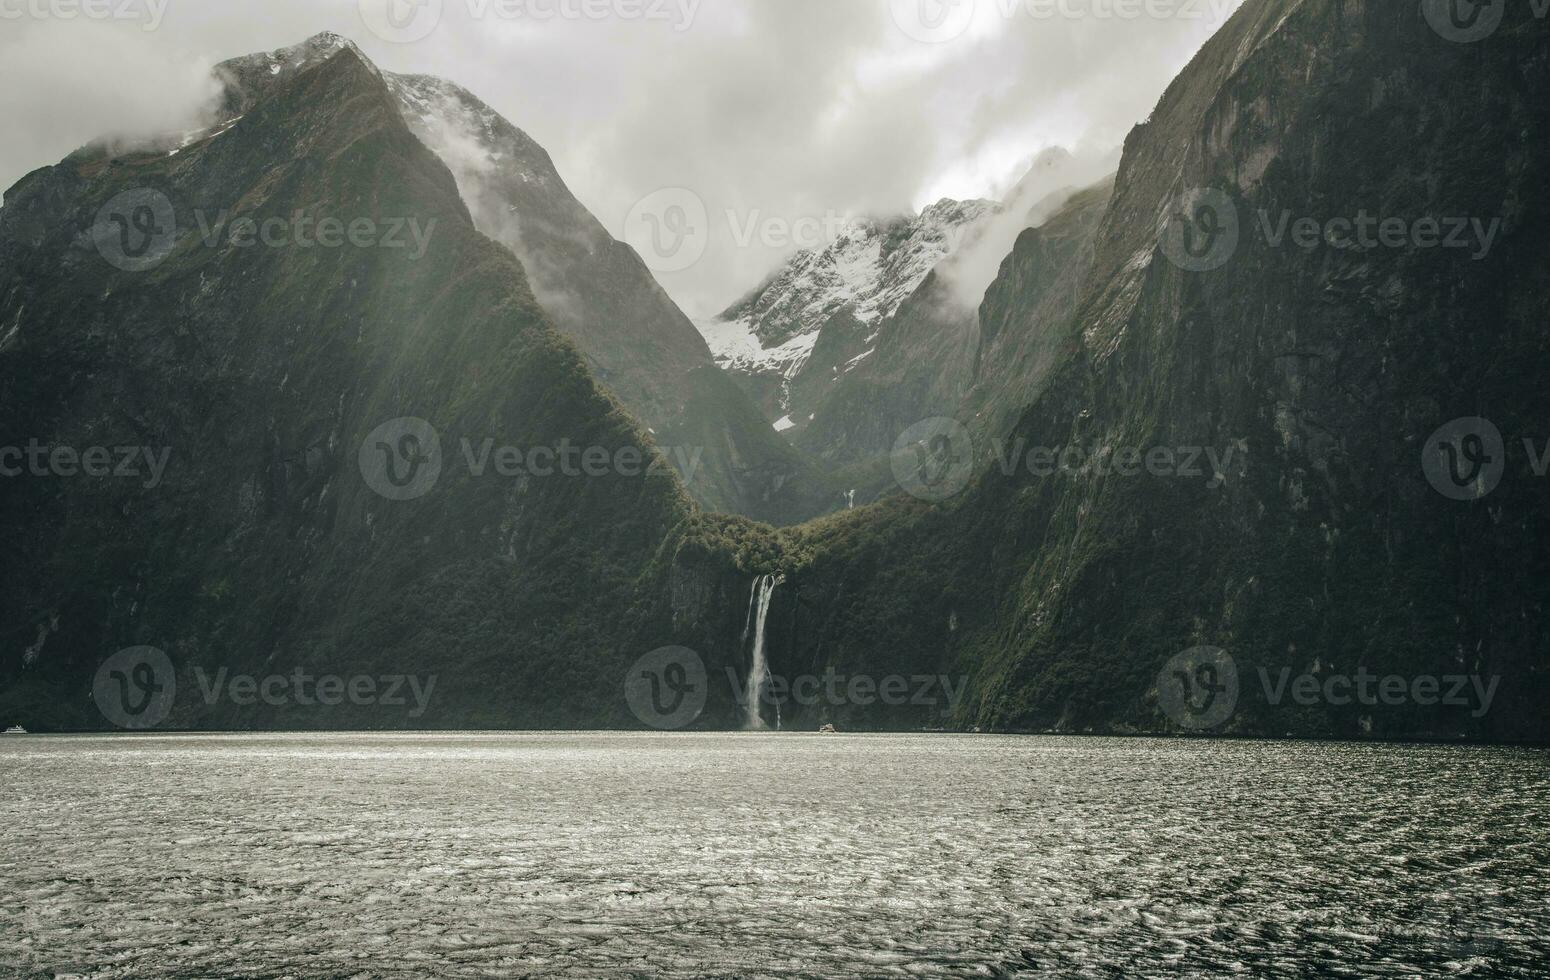 stirling falls ett ikoniska vattenfall i milford ljud, ny Zeelands mest spektakulär naturlig attraktion i söder ö av ny själland. foto